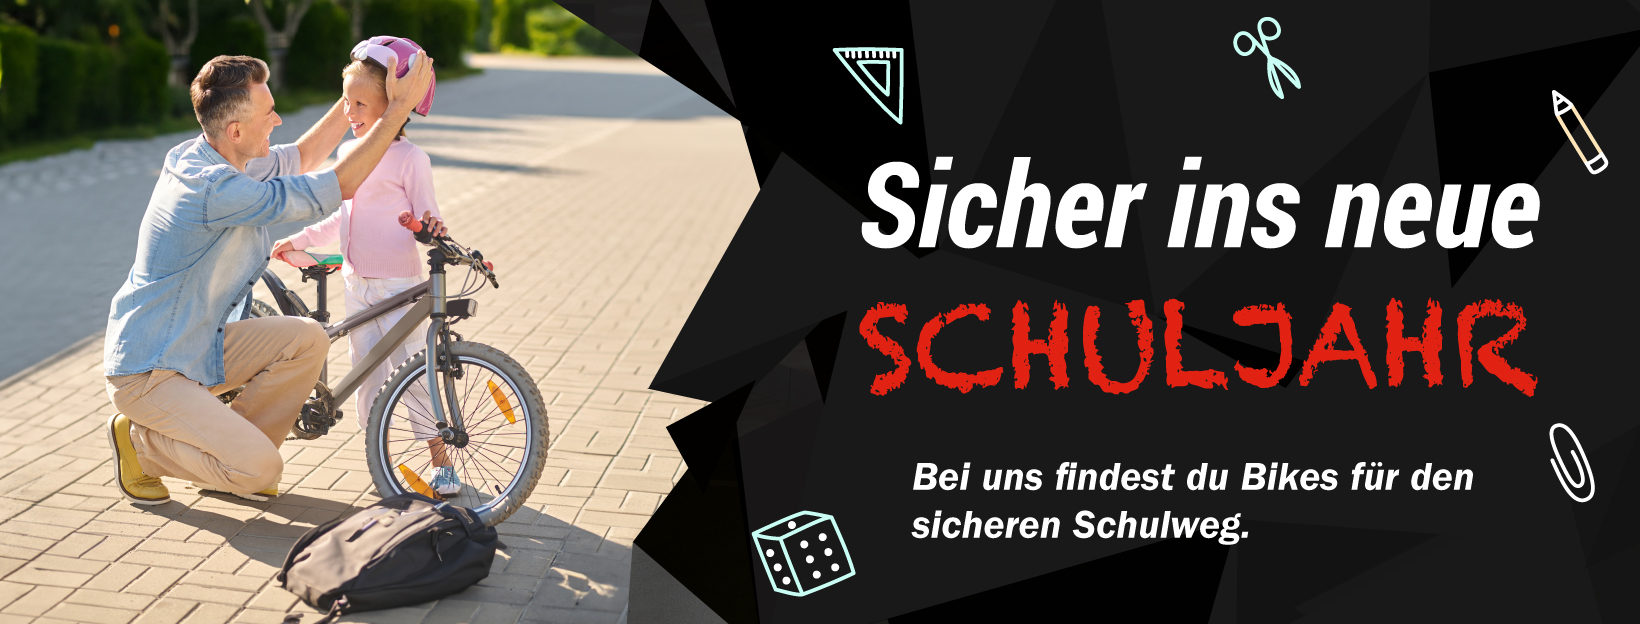 Bikes für deinen sicheren Schulweg aus dem CUBE Store Rostock